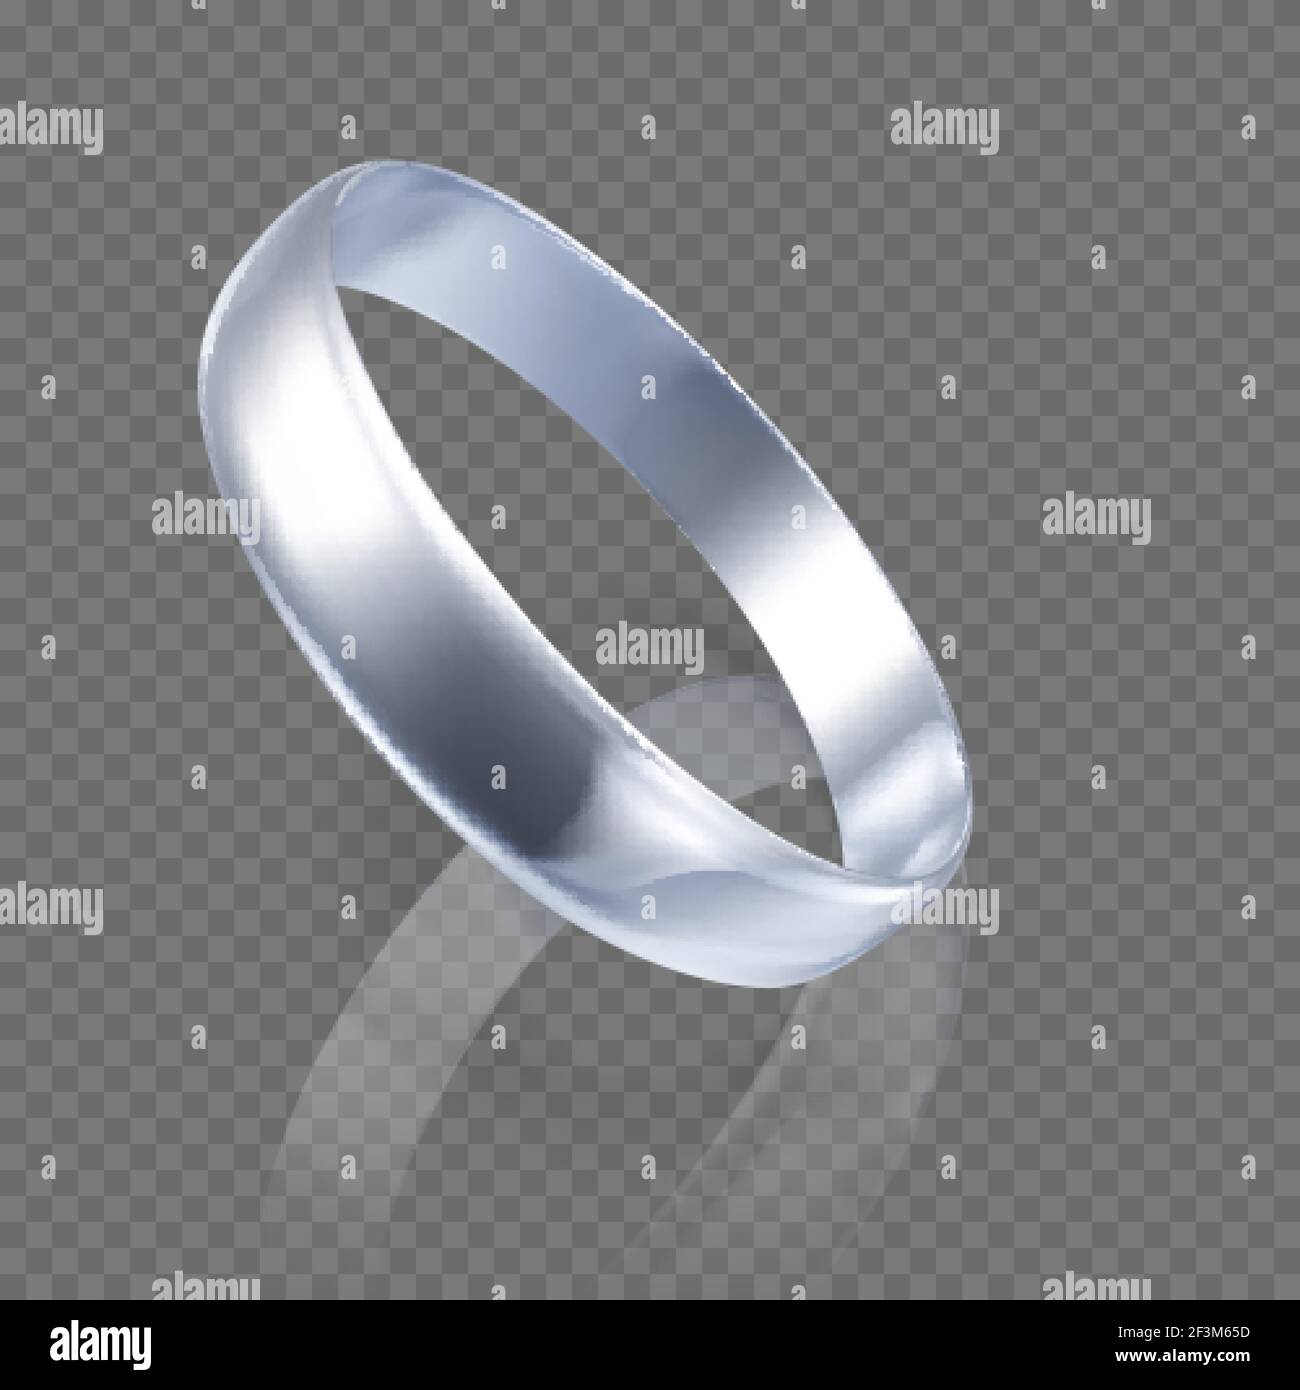 Anello realistico in oro bianco o argento. Rendering 3D dell'anello in platino con ombre e riflessi. Illustrazione vettoriale Illustrazione Vettoriale